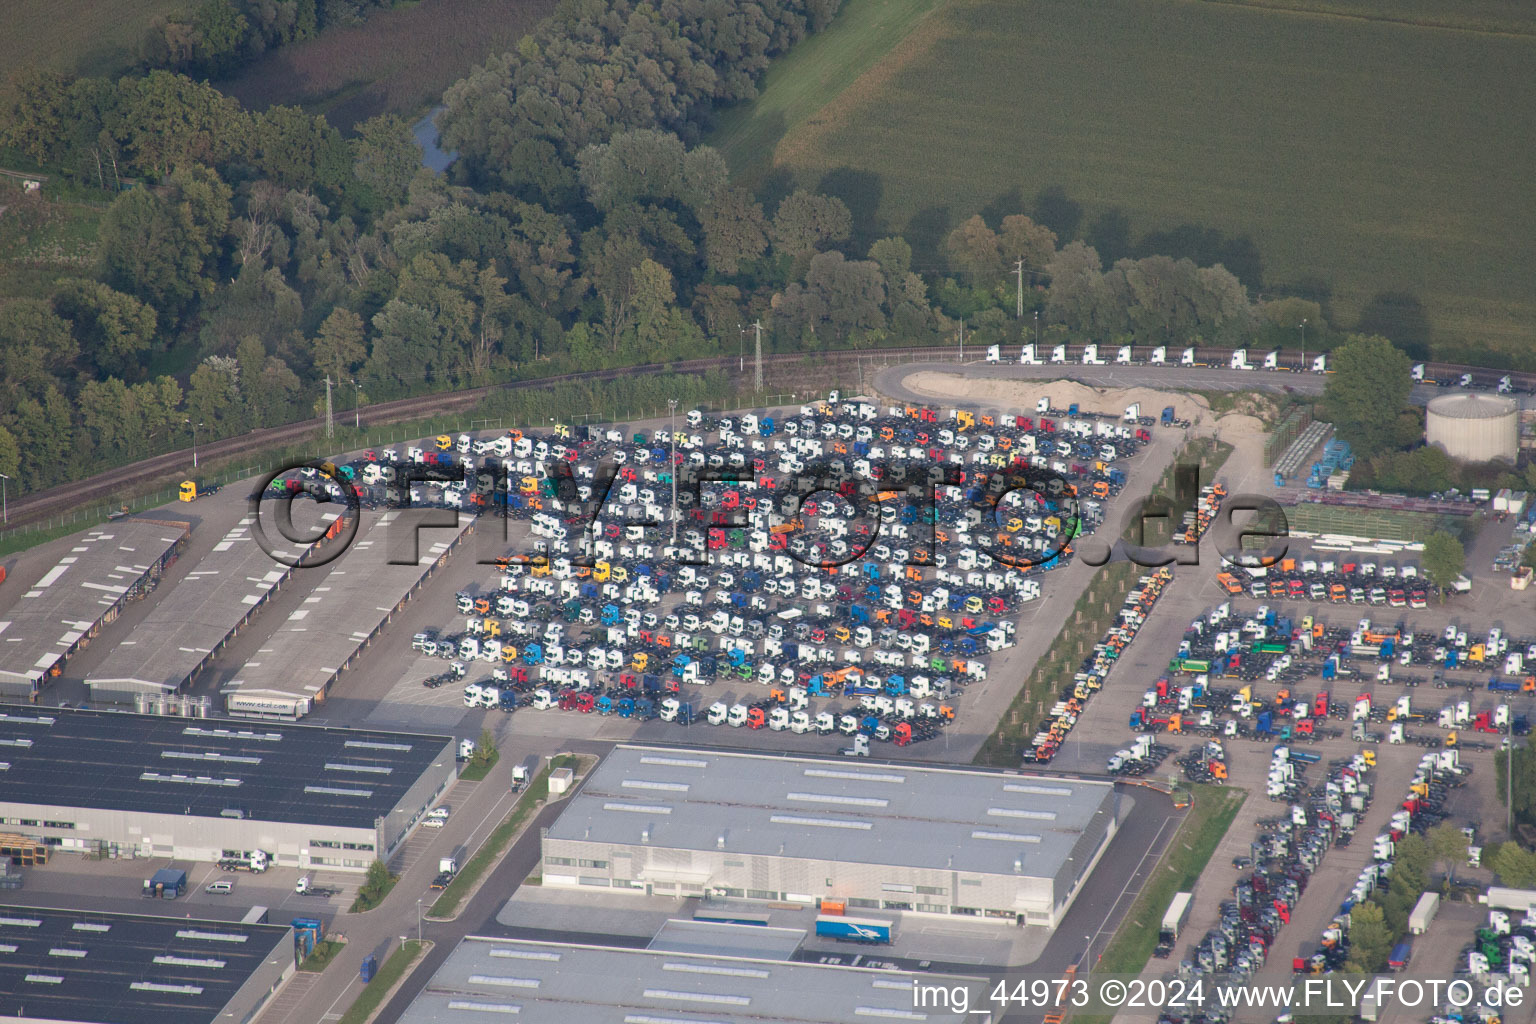 Vue oblique de Places de parking pour camions Daimler à Wörth am Rhein dans le département Rhénanie-Palatinat, Allemagne